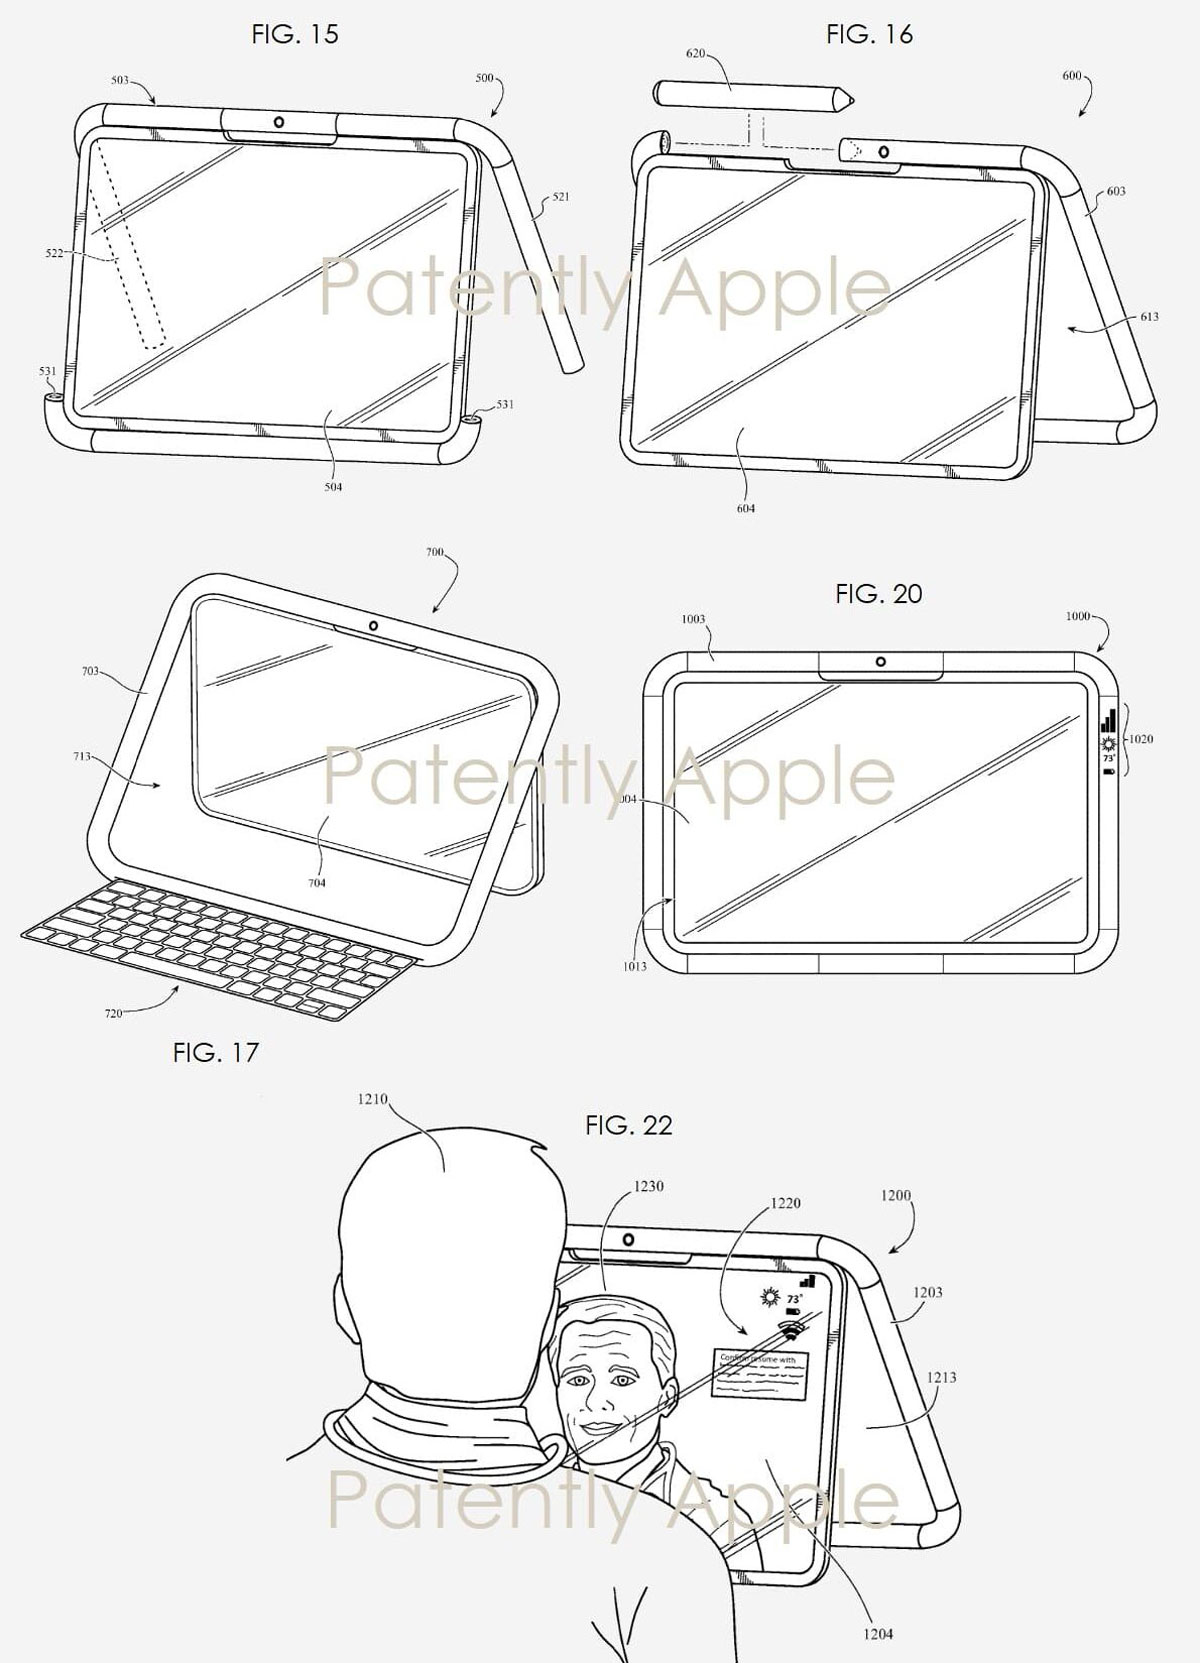 Apple patenteerde de vreemde iPad van de toekomst